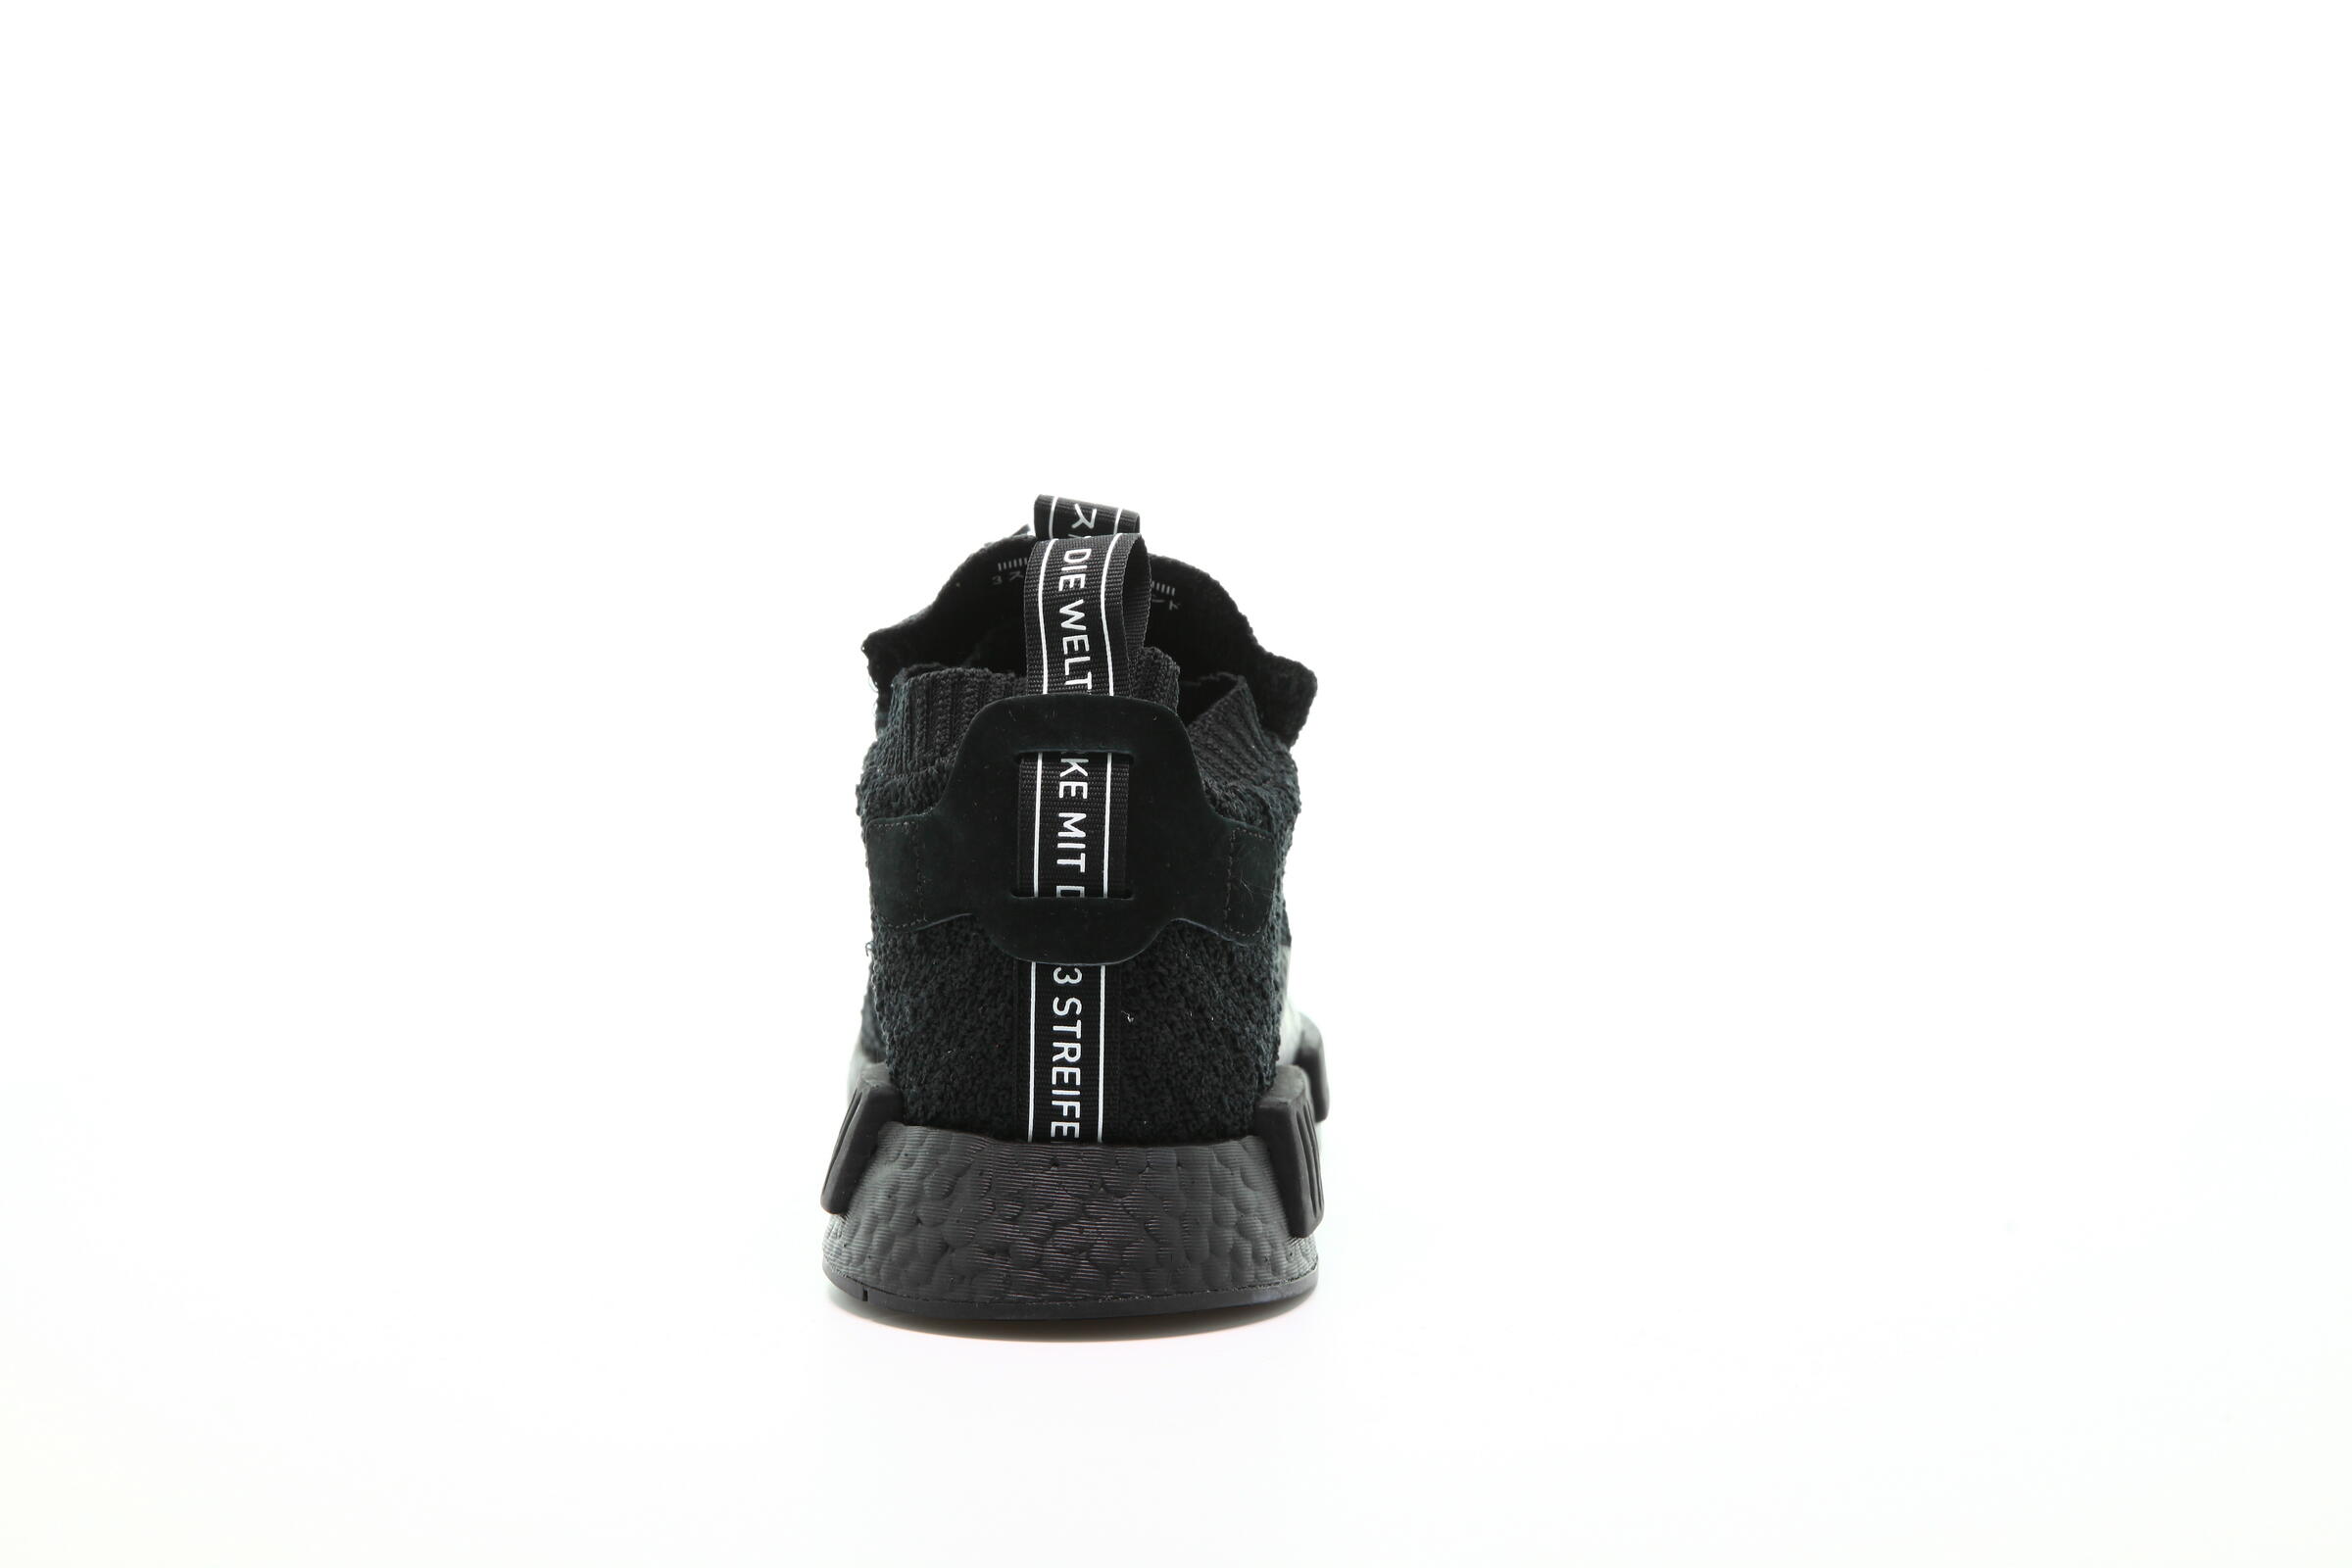 adidas Originals Nmd Ts1 Primeknit Gore-Tex "Core Black"